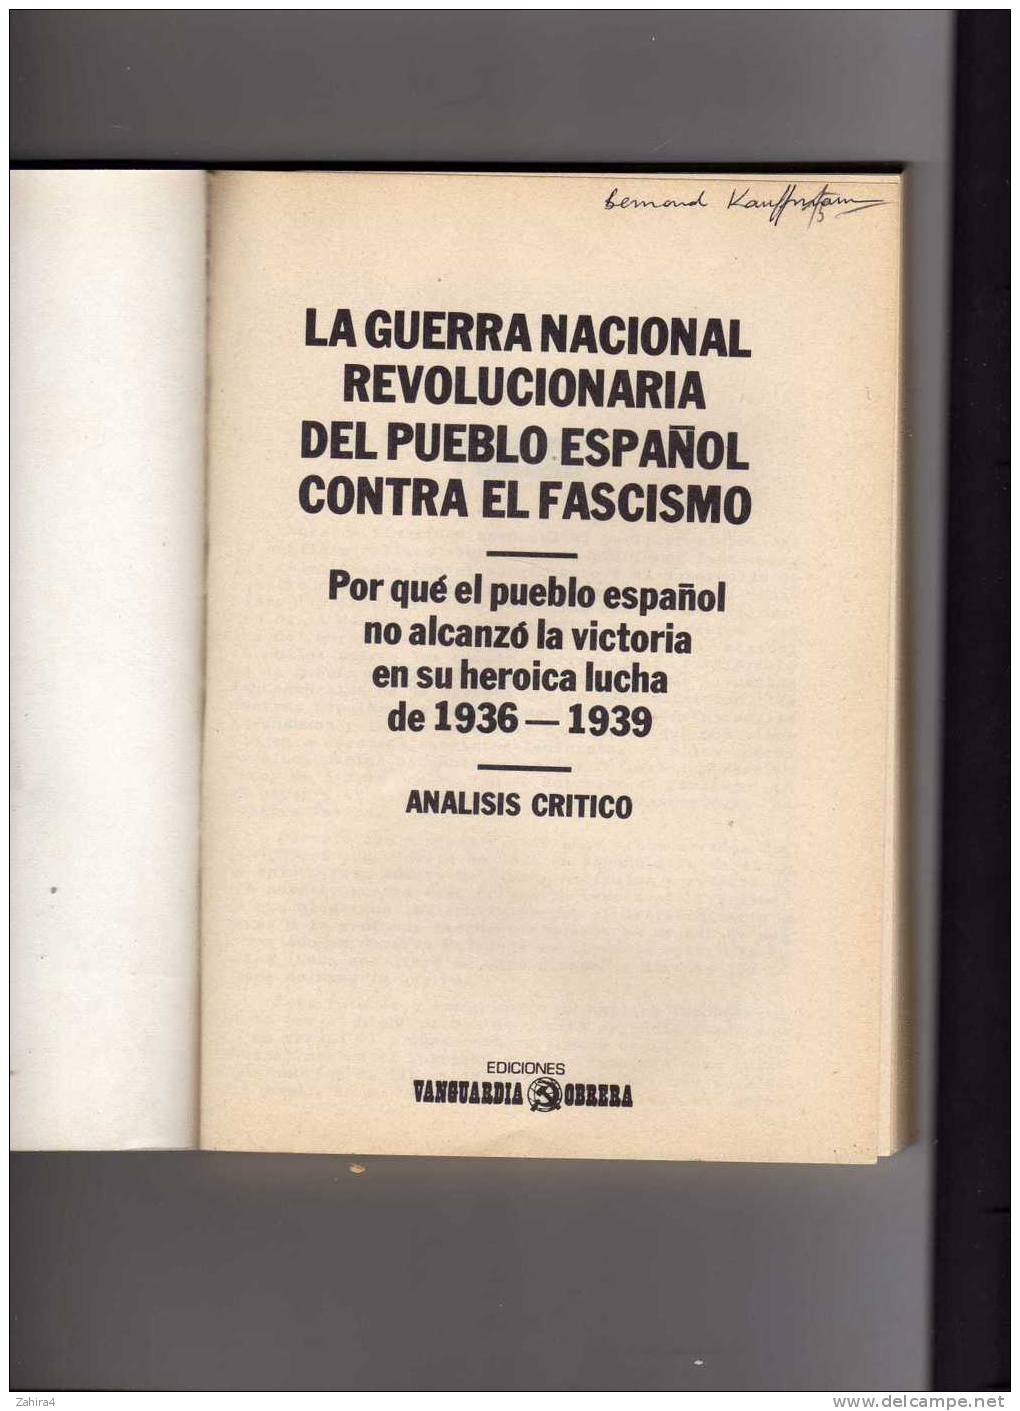 La Guerra Nacional Revolucionaria Del Pueblo Espanol Contra El Fascismo - Analisis Critico -36-39 - Histoire Et Art